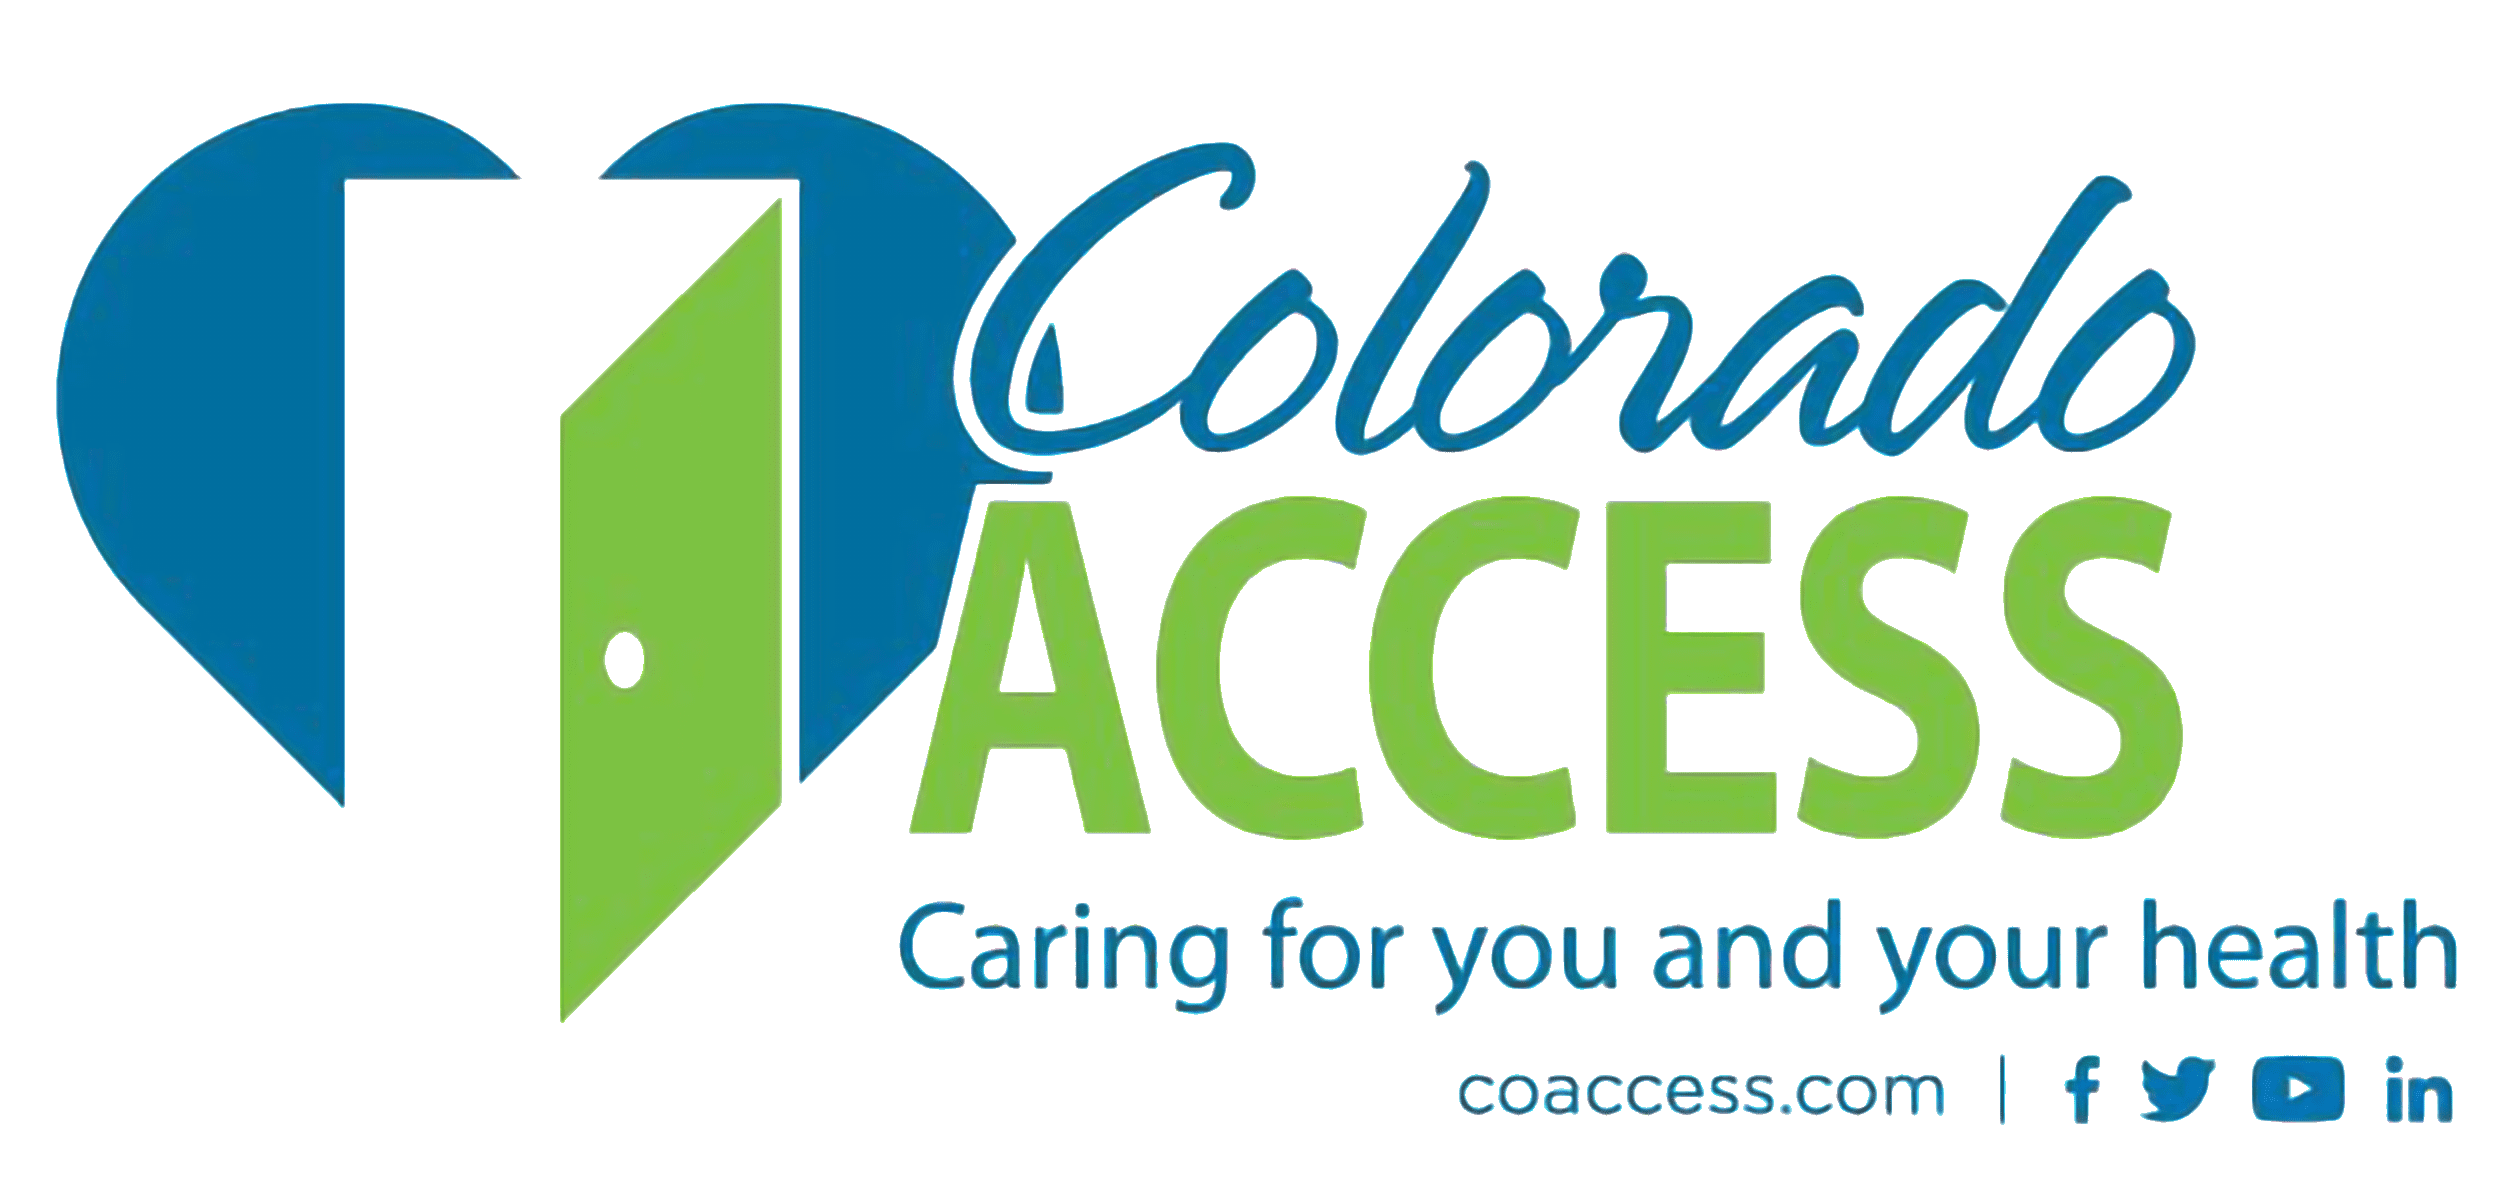 Colorado Access logo